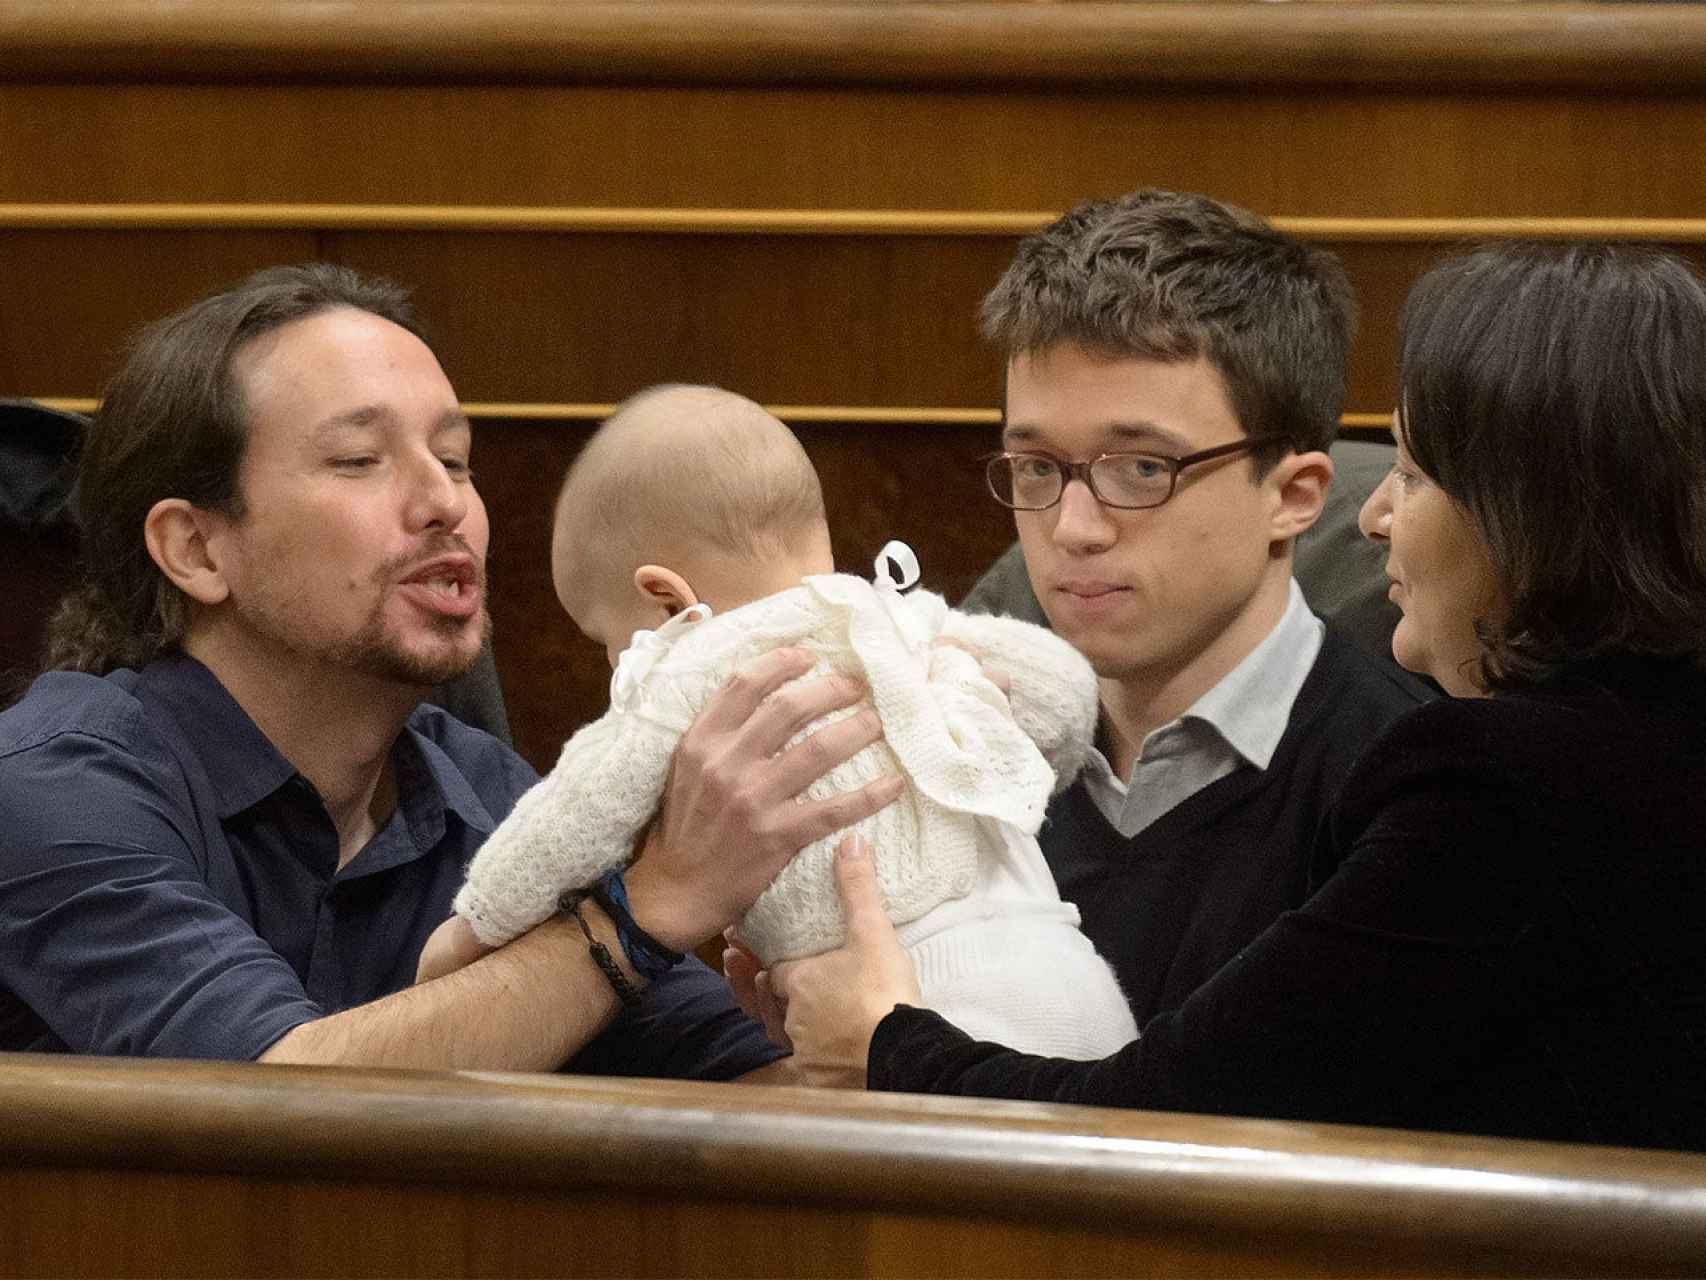 Pablo Iglesias toma en sus manos a la bebé de Bescansa.